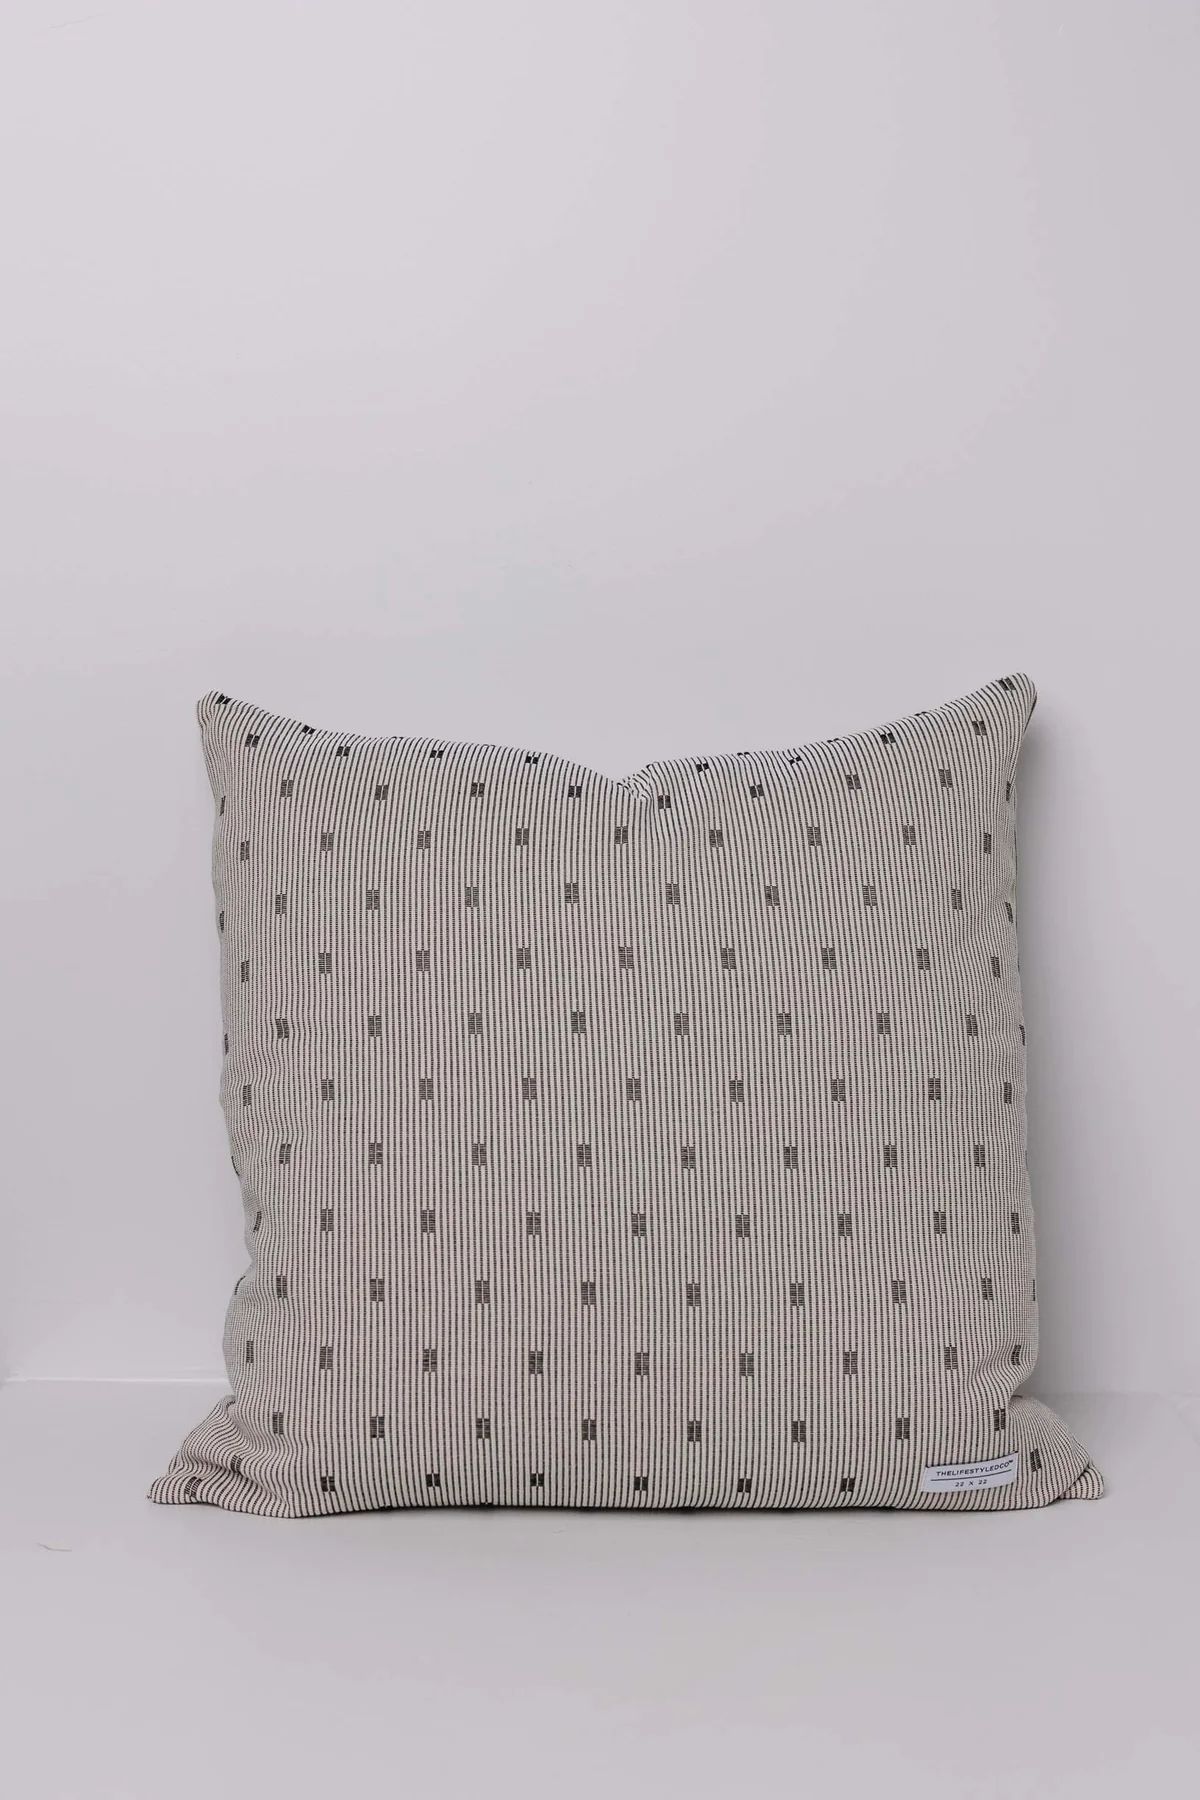 Scanlon Woven Newsprint Pillow - 2 Sizes | THELIFESTYLEDCO